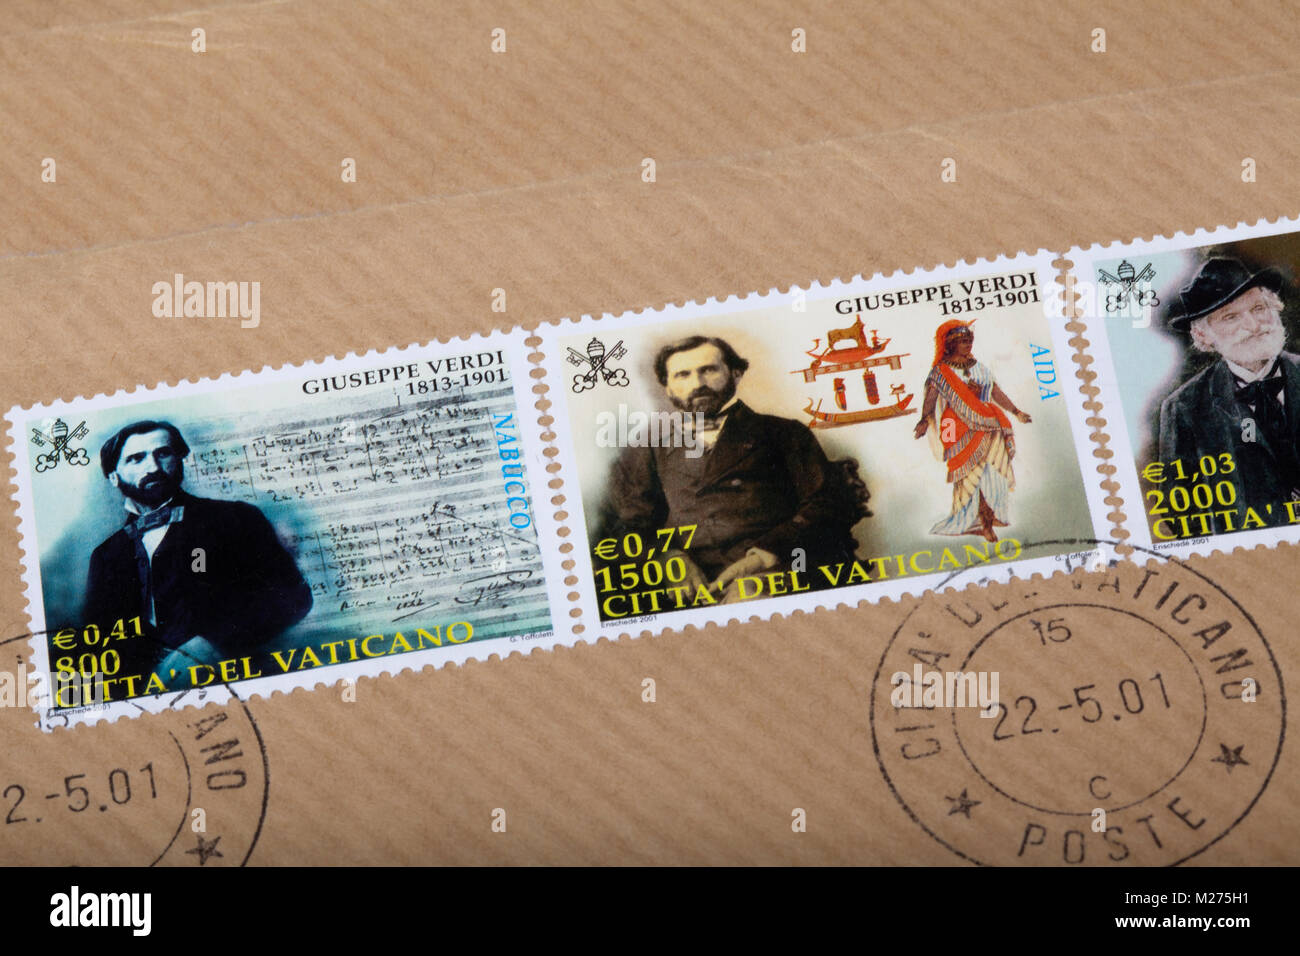 Timbres du Vatican sur une lettre, estampillé, Vatican, Italie, Europe, Gestempelte Briefmarken aus dem Vatikan, Giuseppe Verdi Banque D'Images